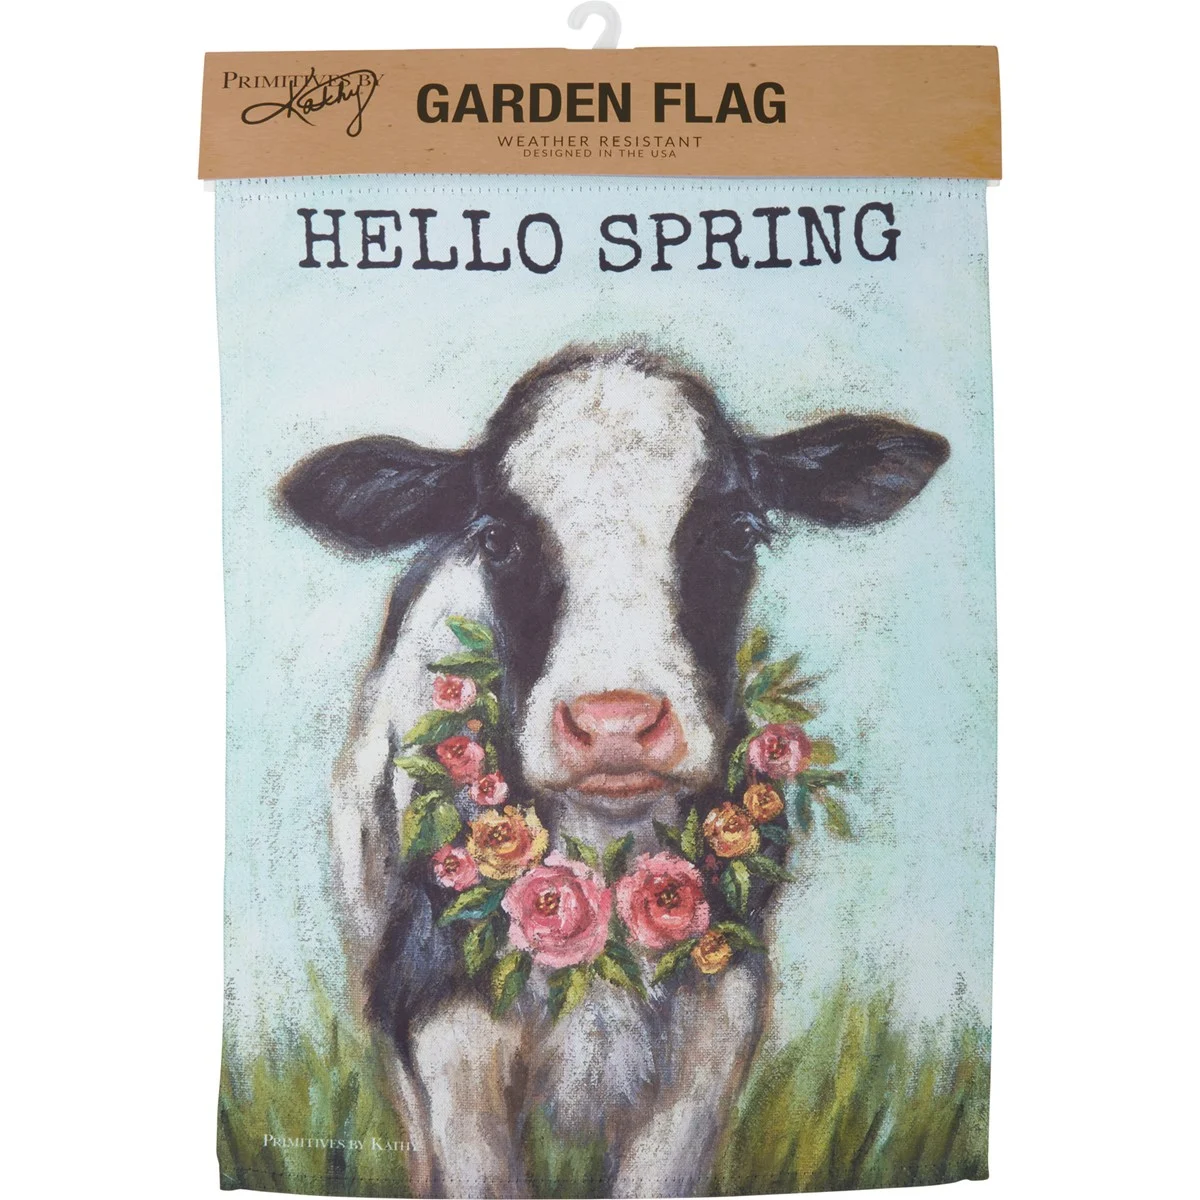 Hello Spring Cow Garden Flag